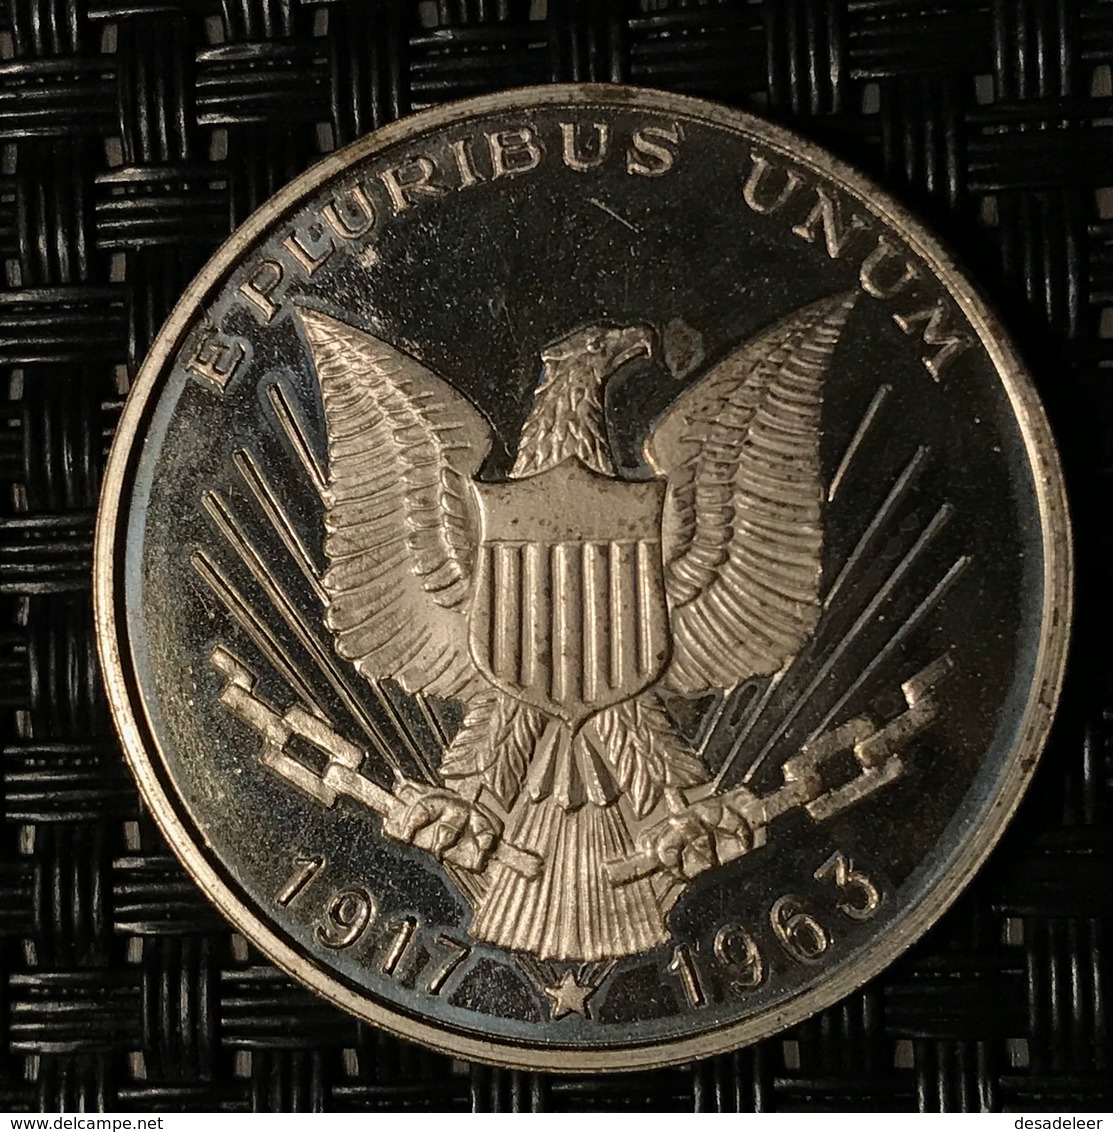 JOHN FITZGERALD KENNEDY 1917 1963 - Souvenir-Medaille (elongated Coins)